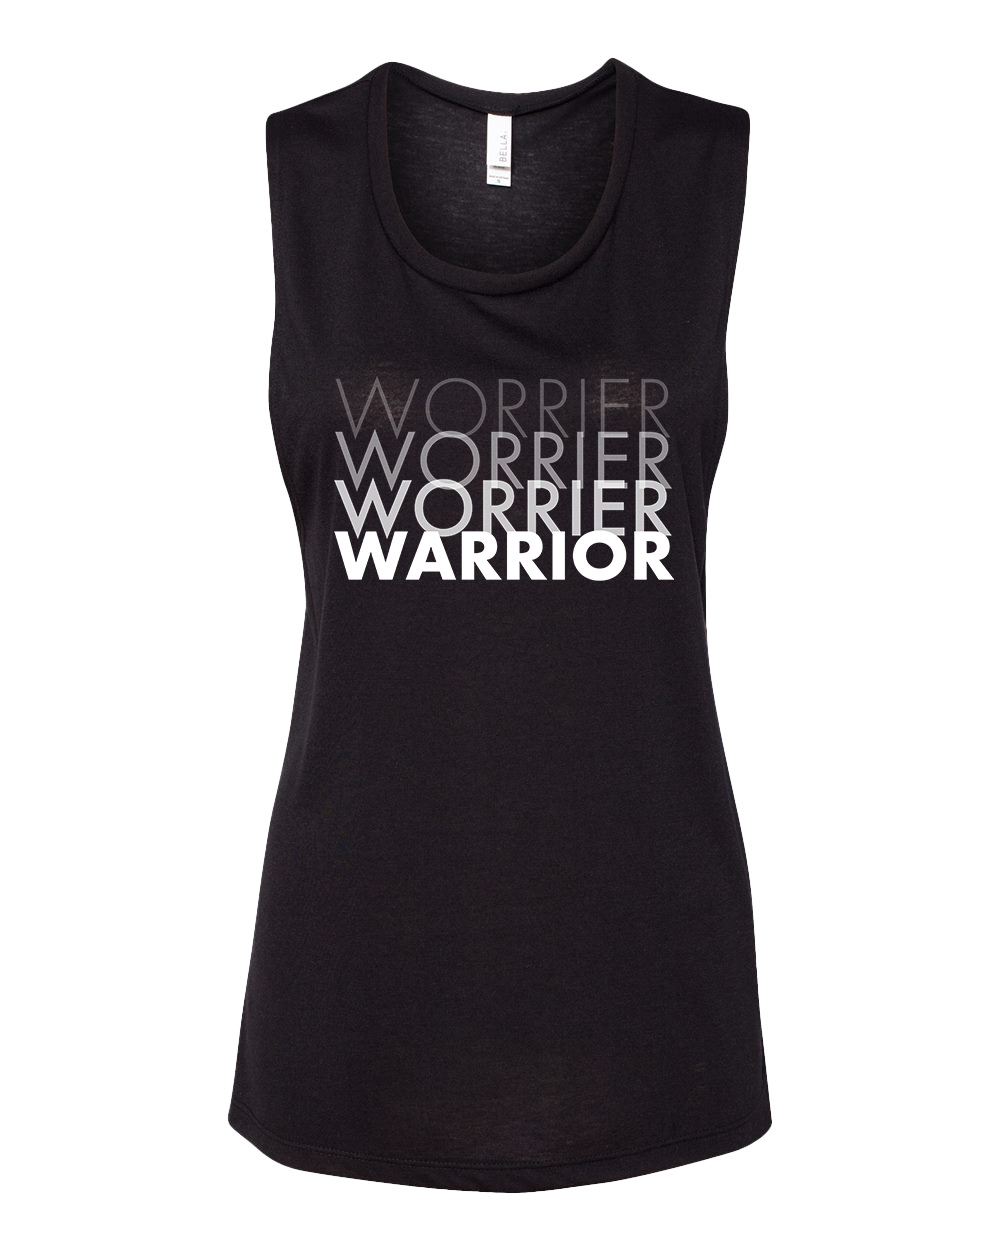 Worrier Warrior